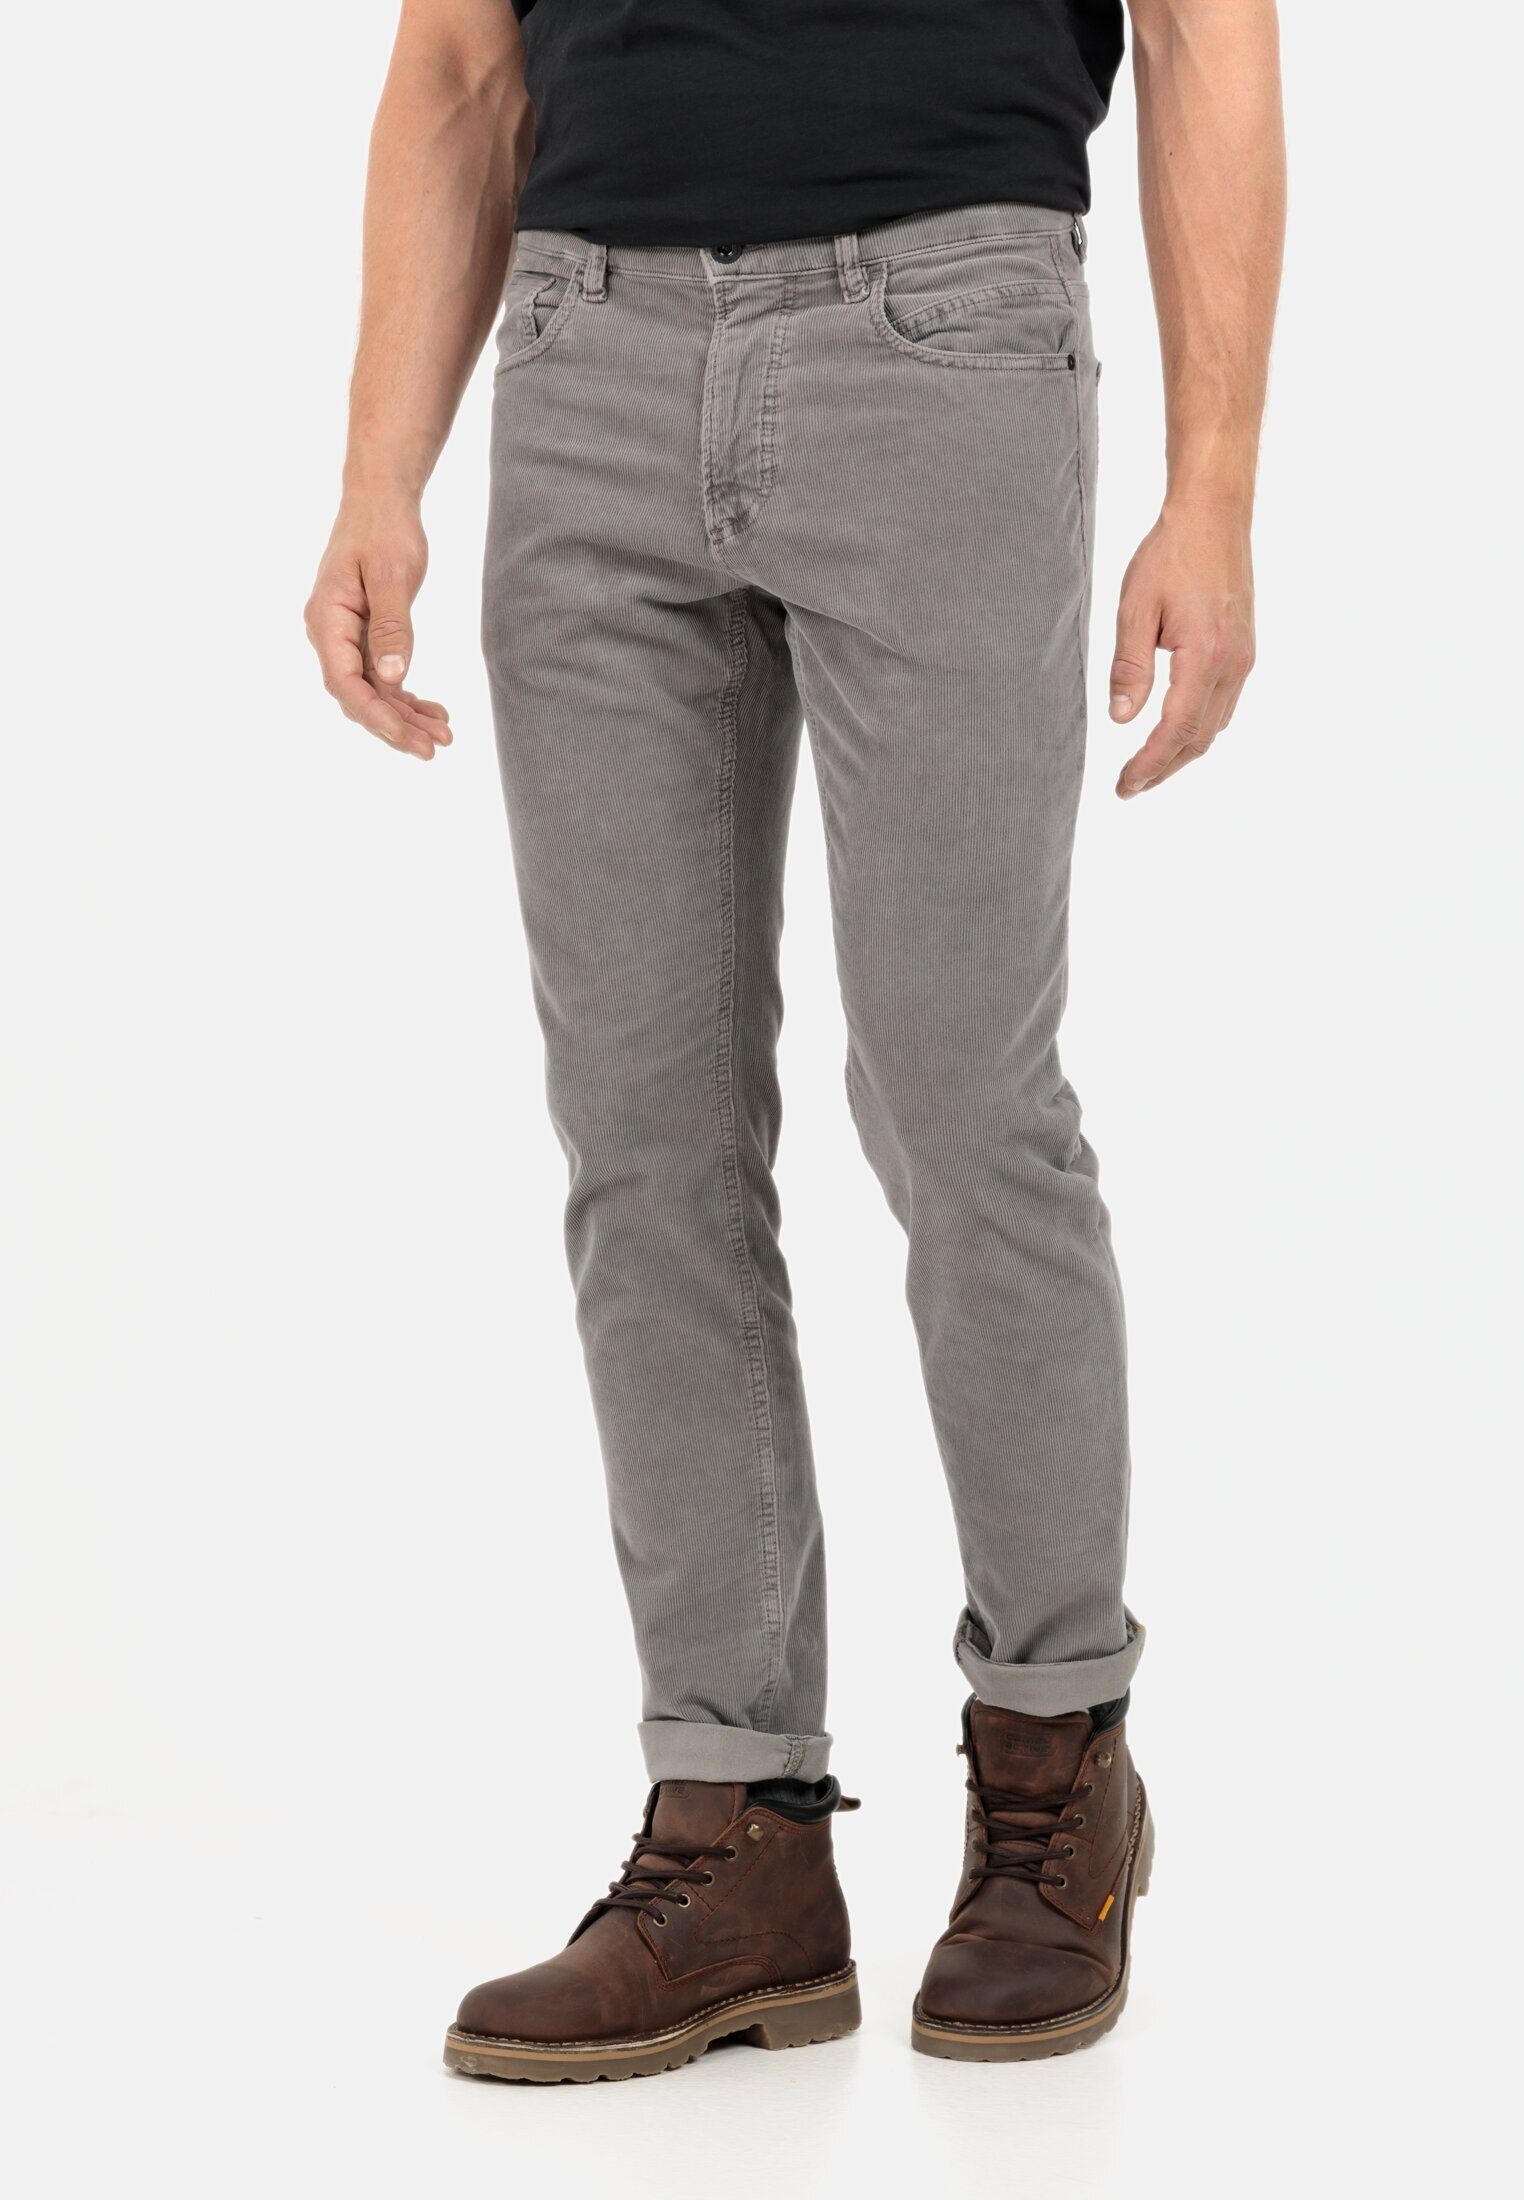 camel active 5-Pocket-Jeans 5-Pocket Cordhose Regular Fit Grau | Straight-Fit Jeans